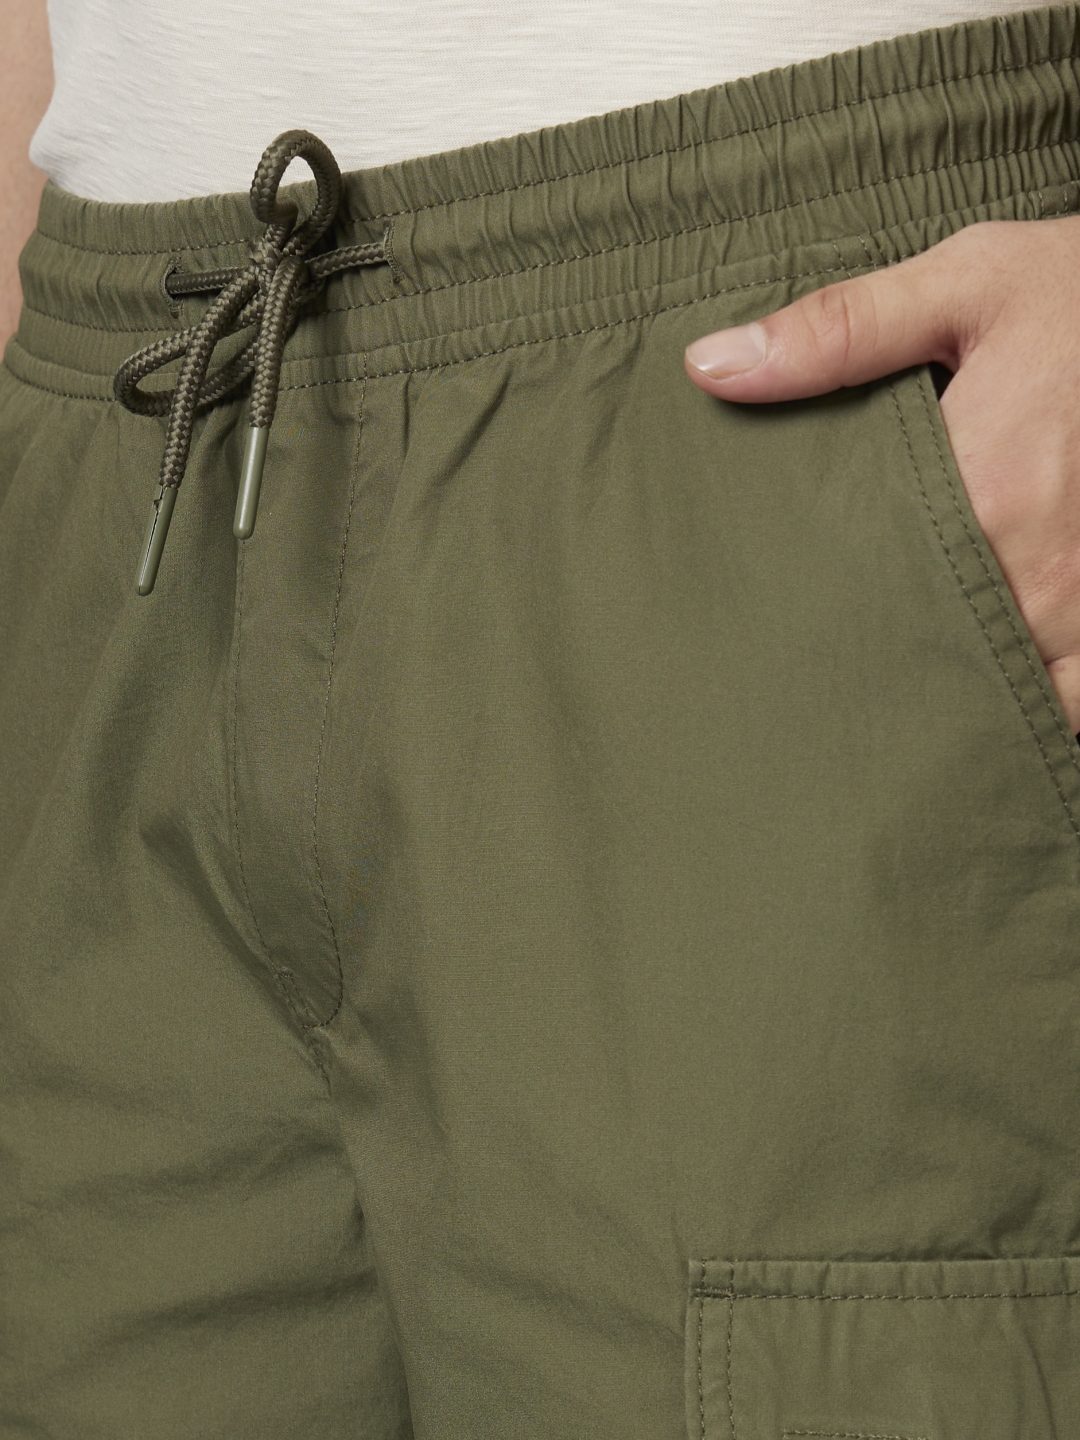 Men's Beige Cotton Solid Shorts